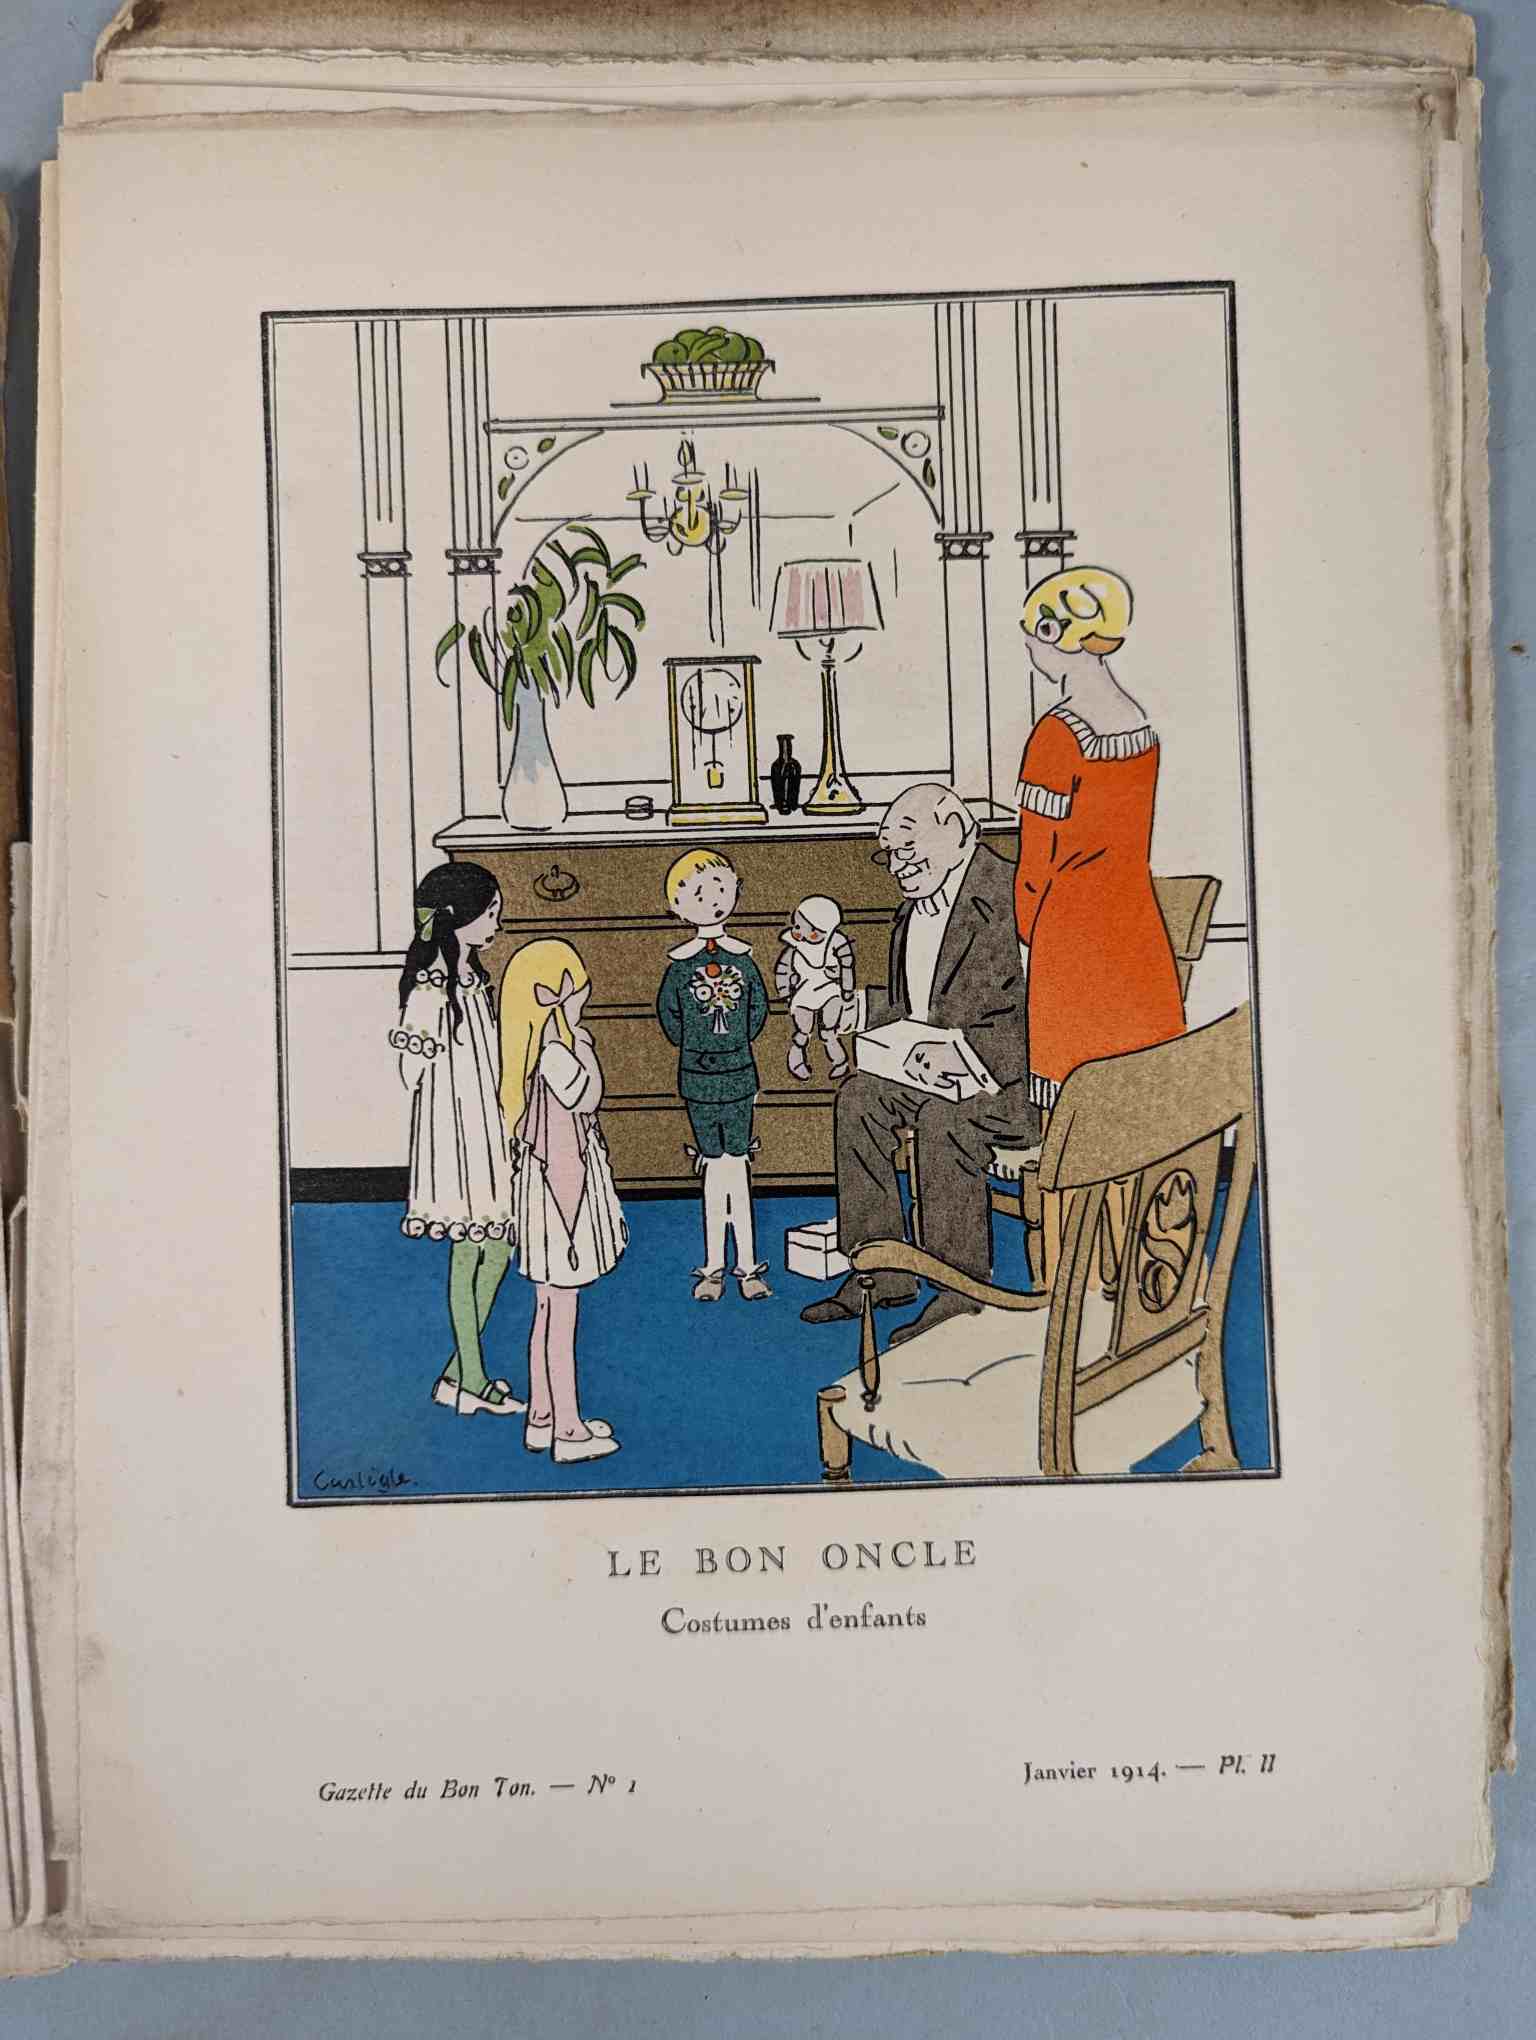 FASHION. VOGEL, Lucien. GAZETTE DU BON TON: Art-Modes & Frivolités, Paris 1913-14, 4 vol. - Image 12 of 54